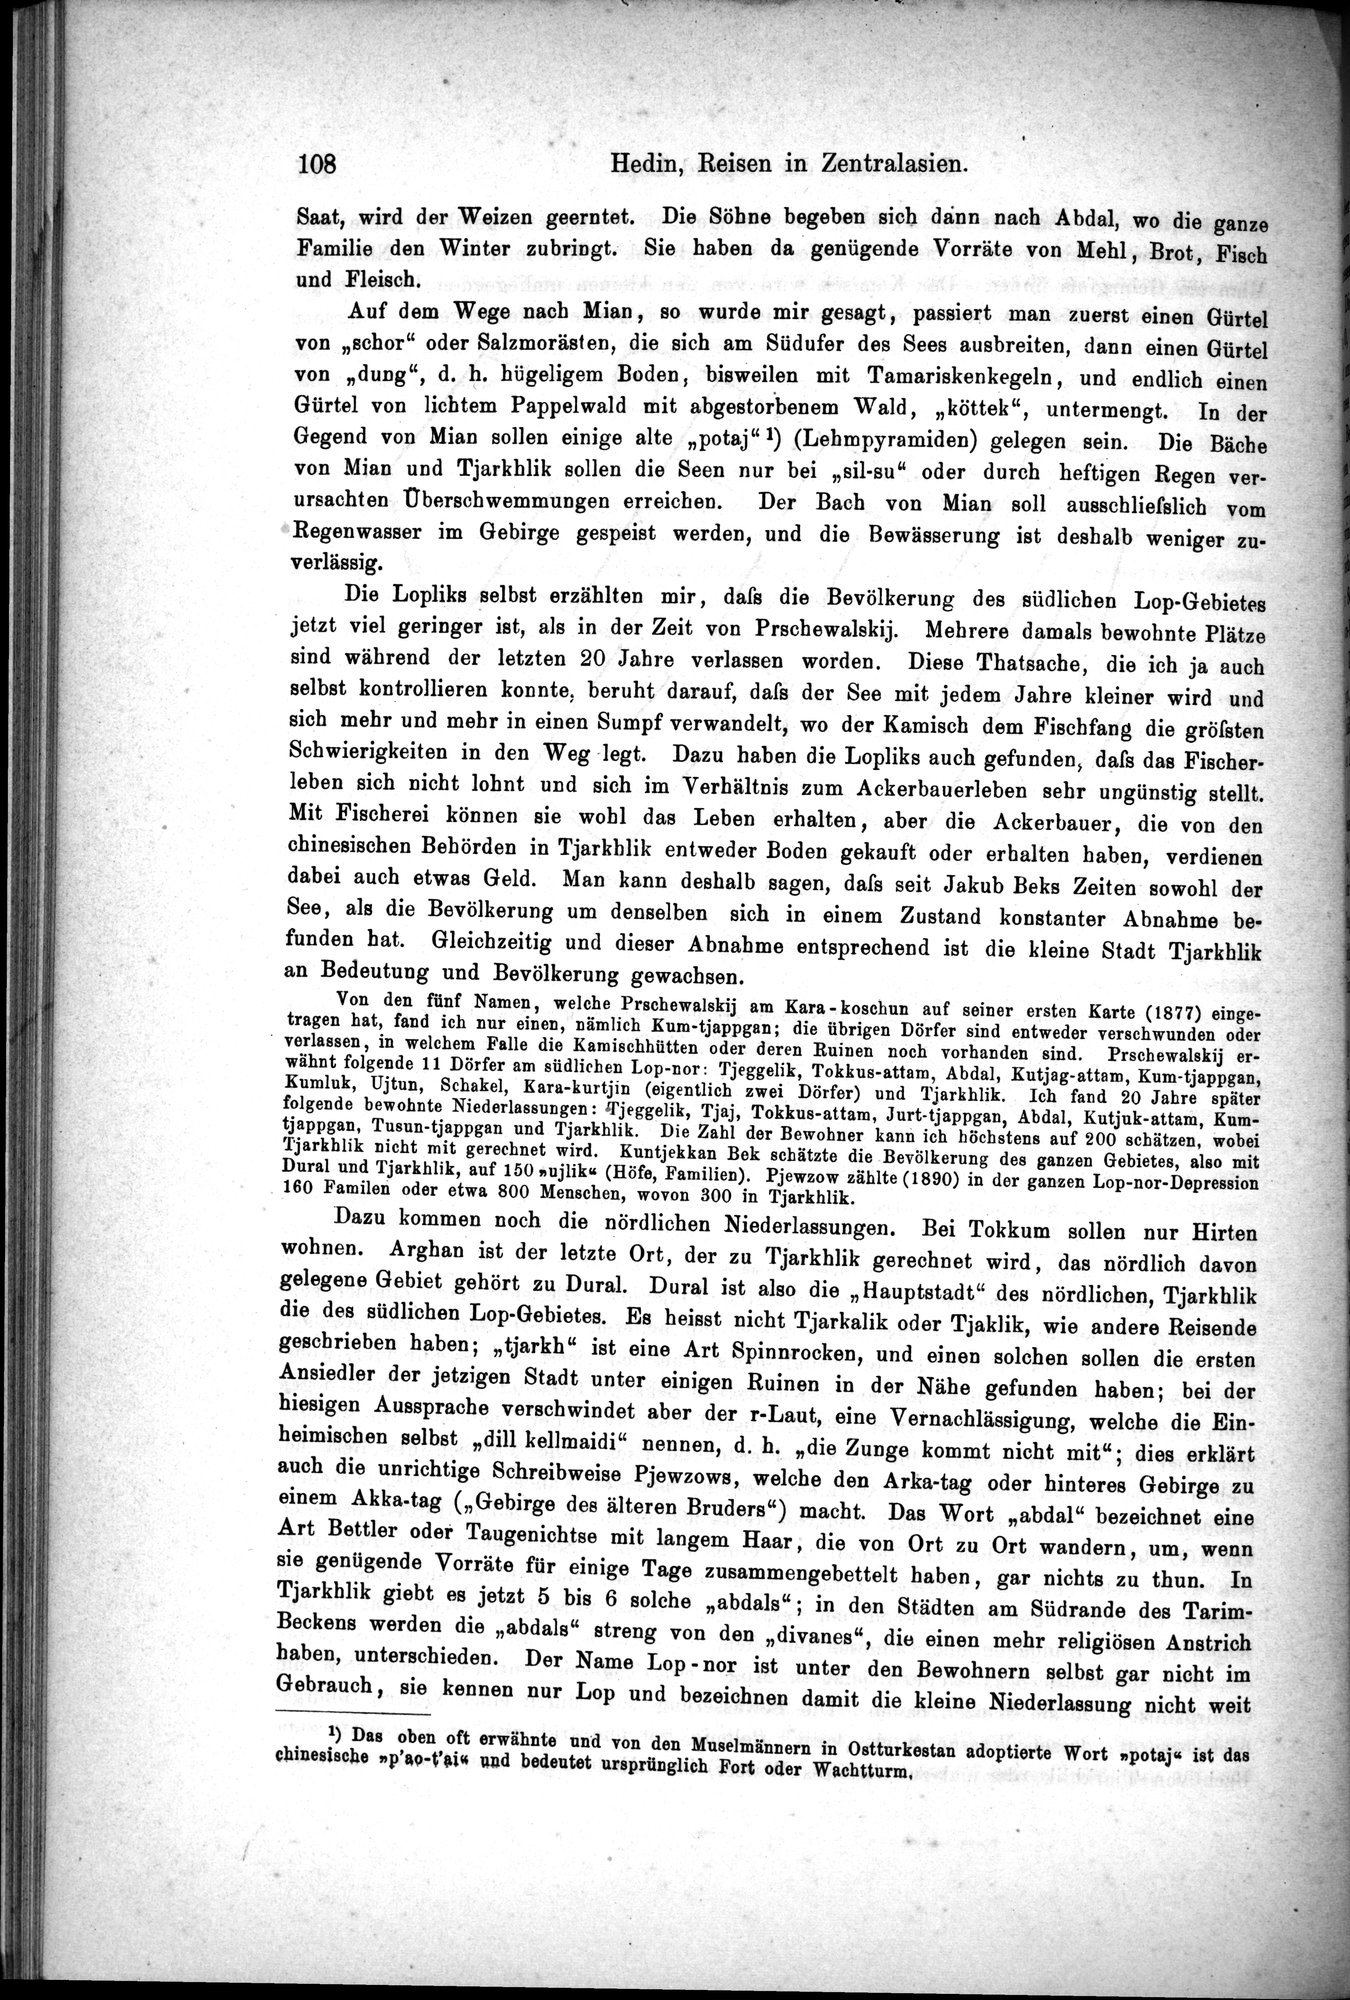 Die Geographische-Wissenschaftlichen Ergebnisse meiner Reisen in Zentralasien, 1894-1897 : vol.1 / Page 120 (Grayscale High Resolution Image)